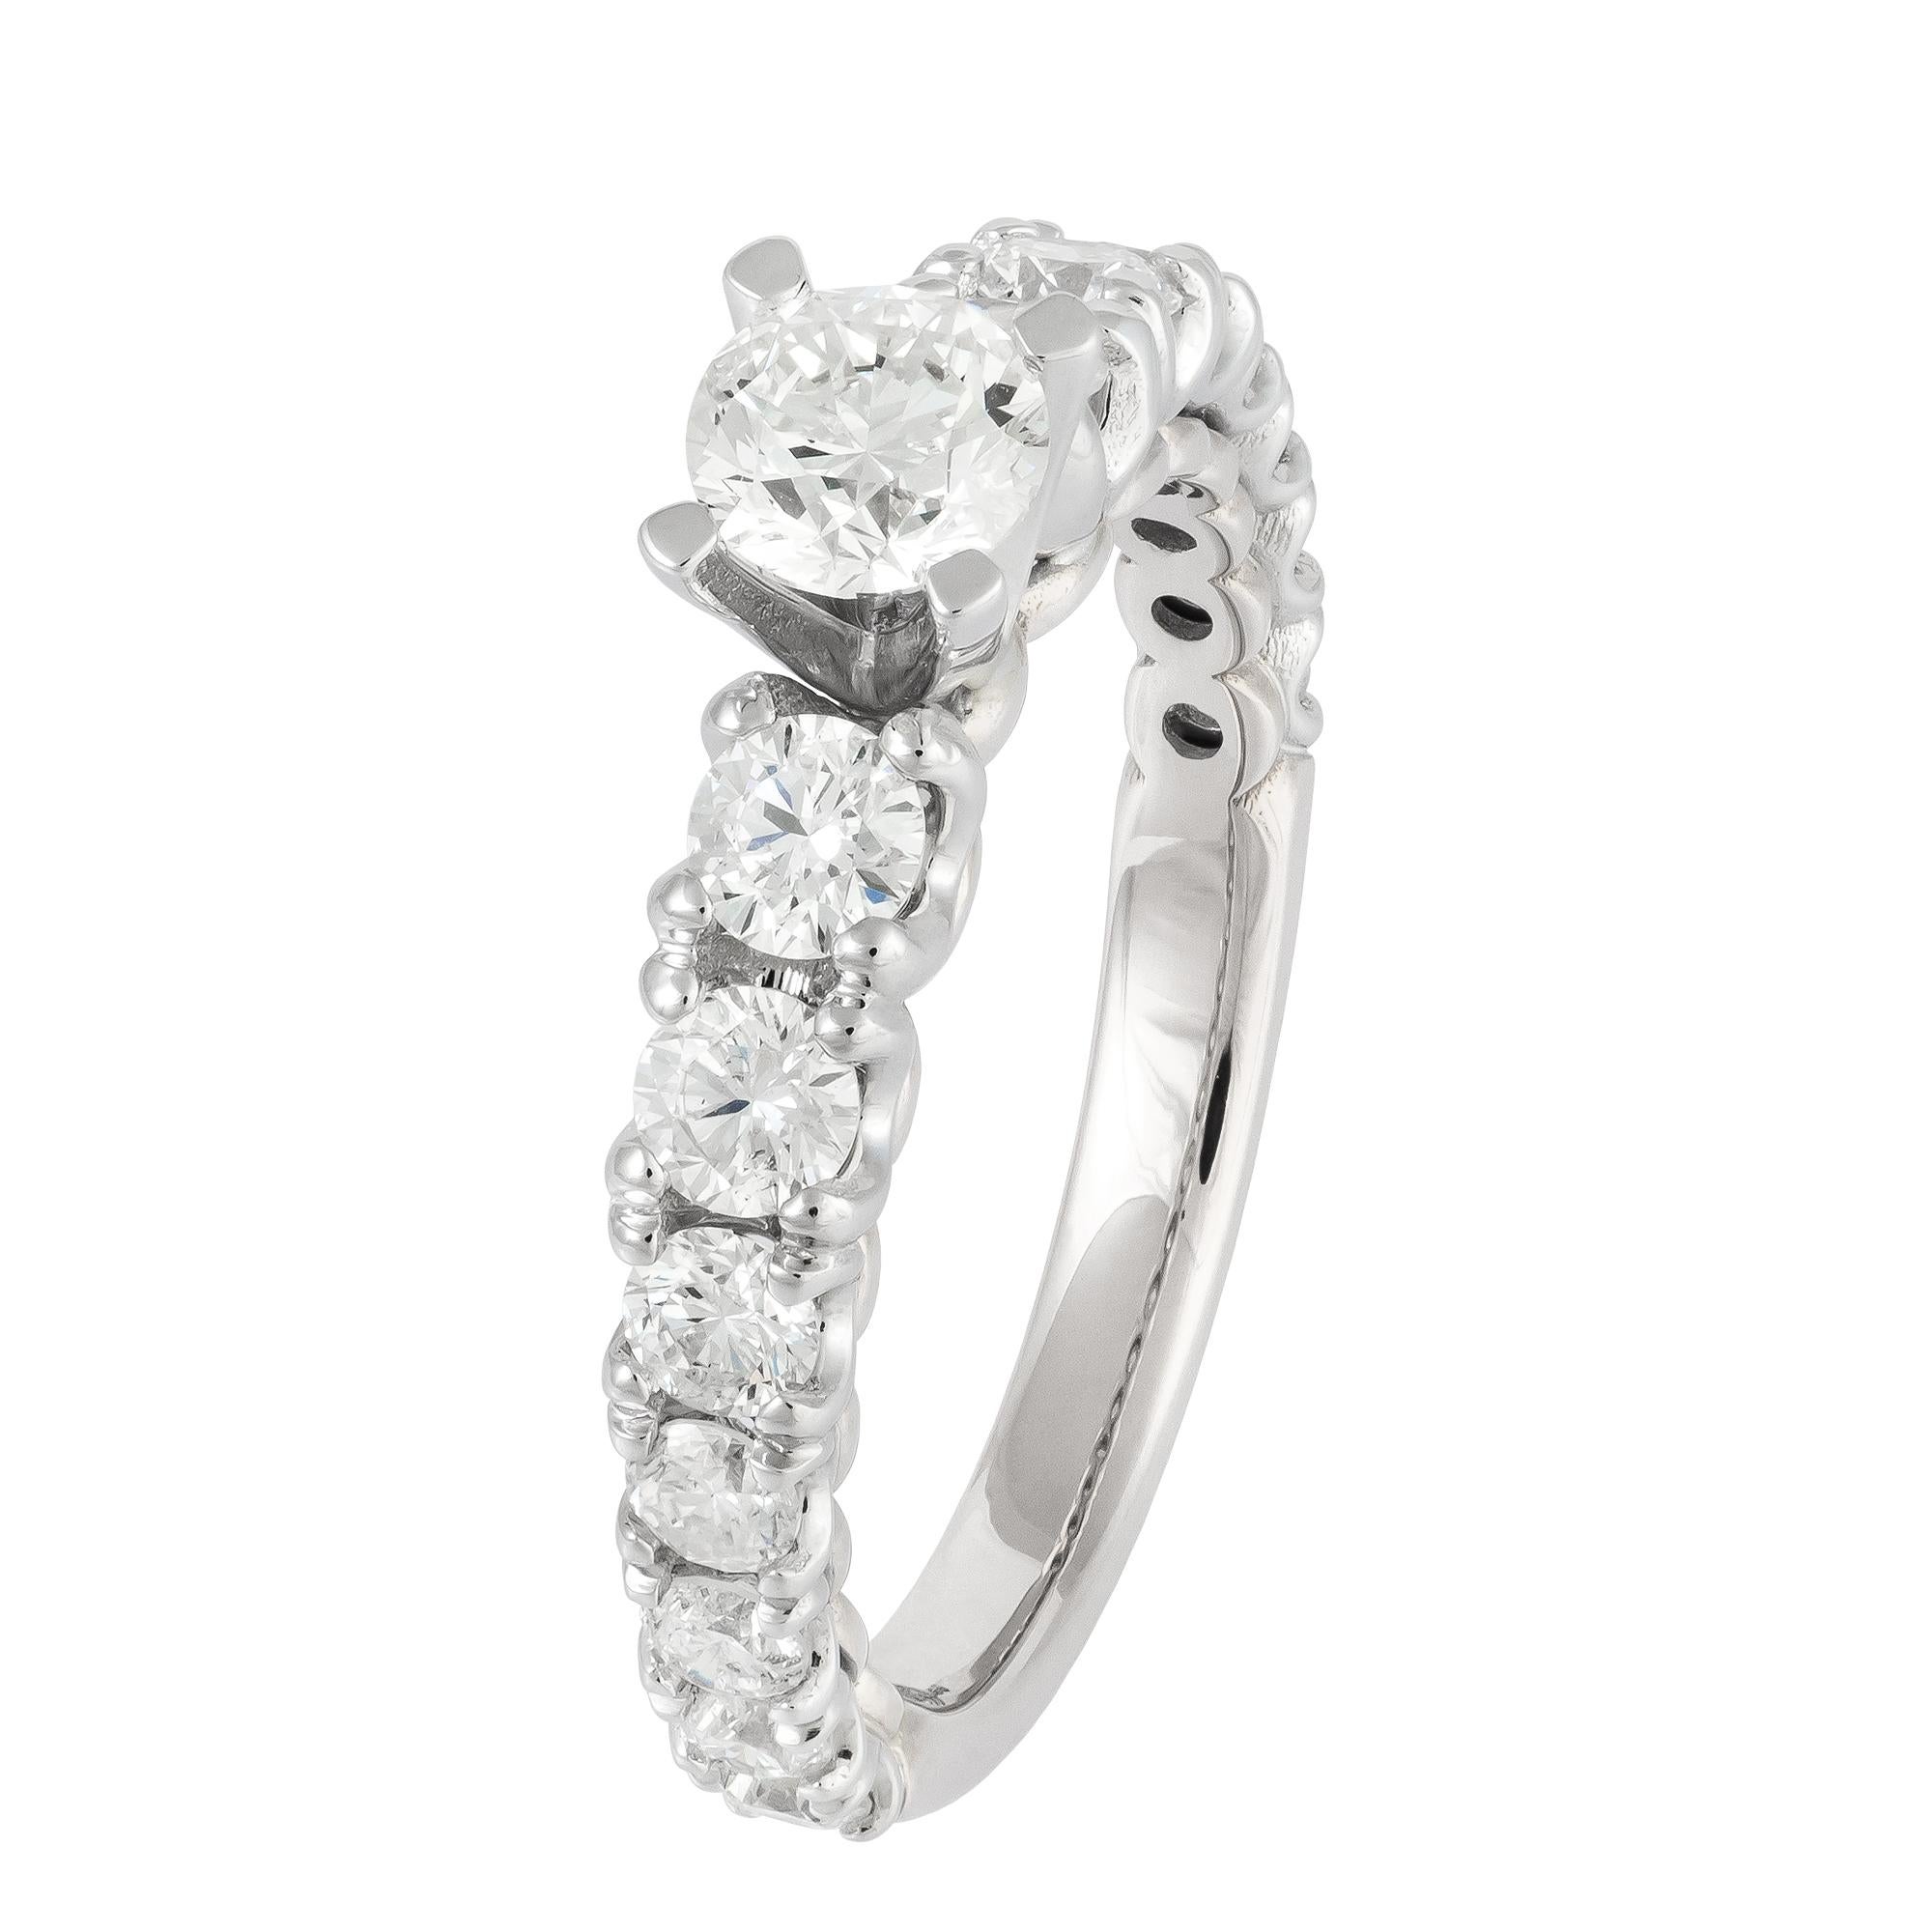 For Sale:  Breathtaking White 18K Gold White Diamond Ring For Her 4